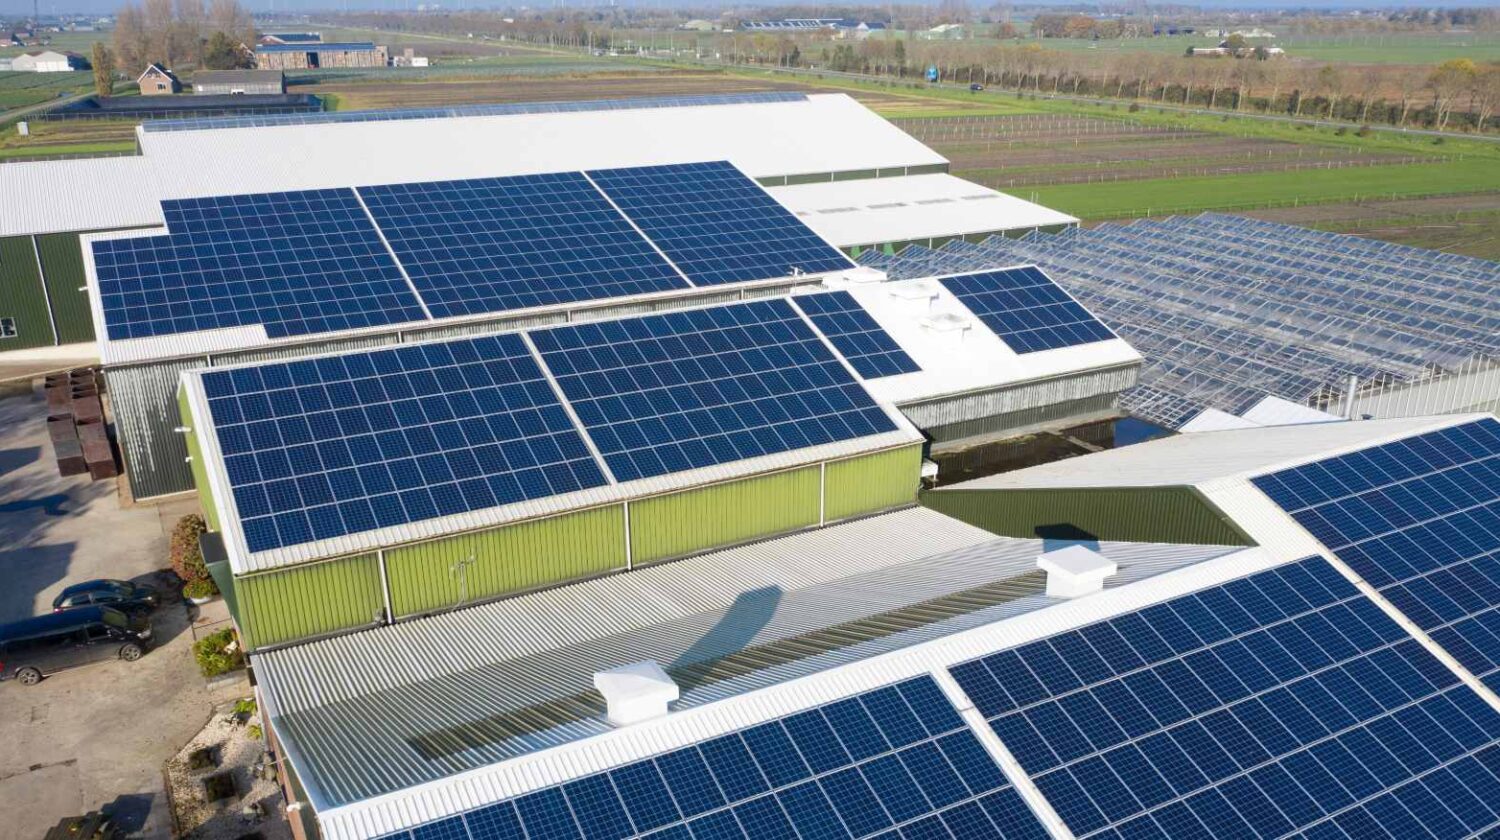 11Impianti solari su tetti industriali